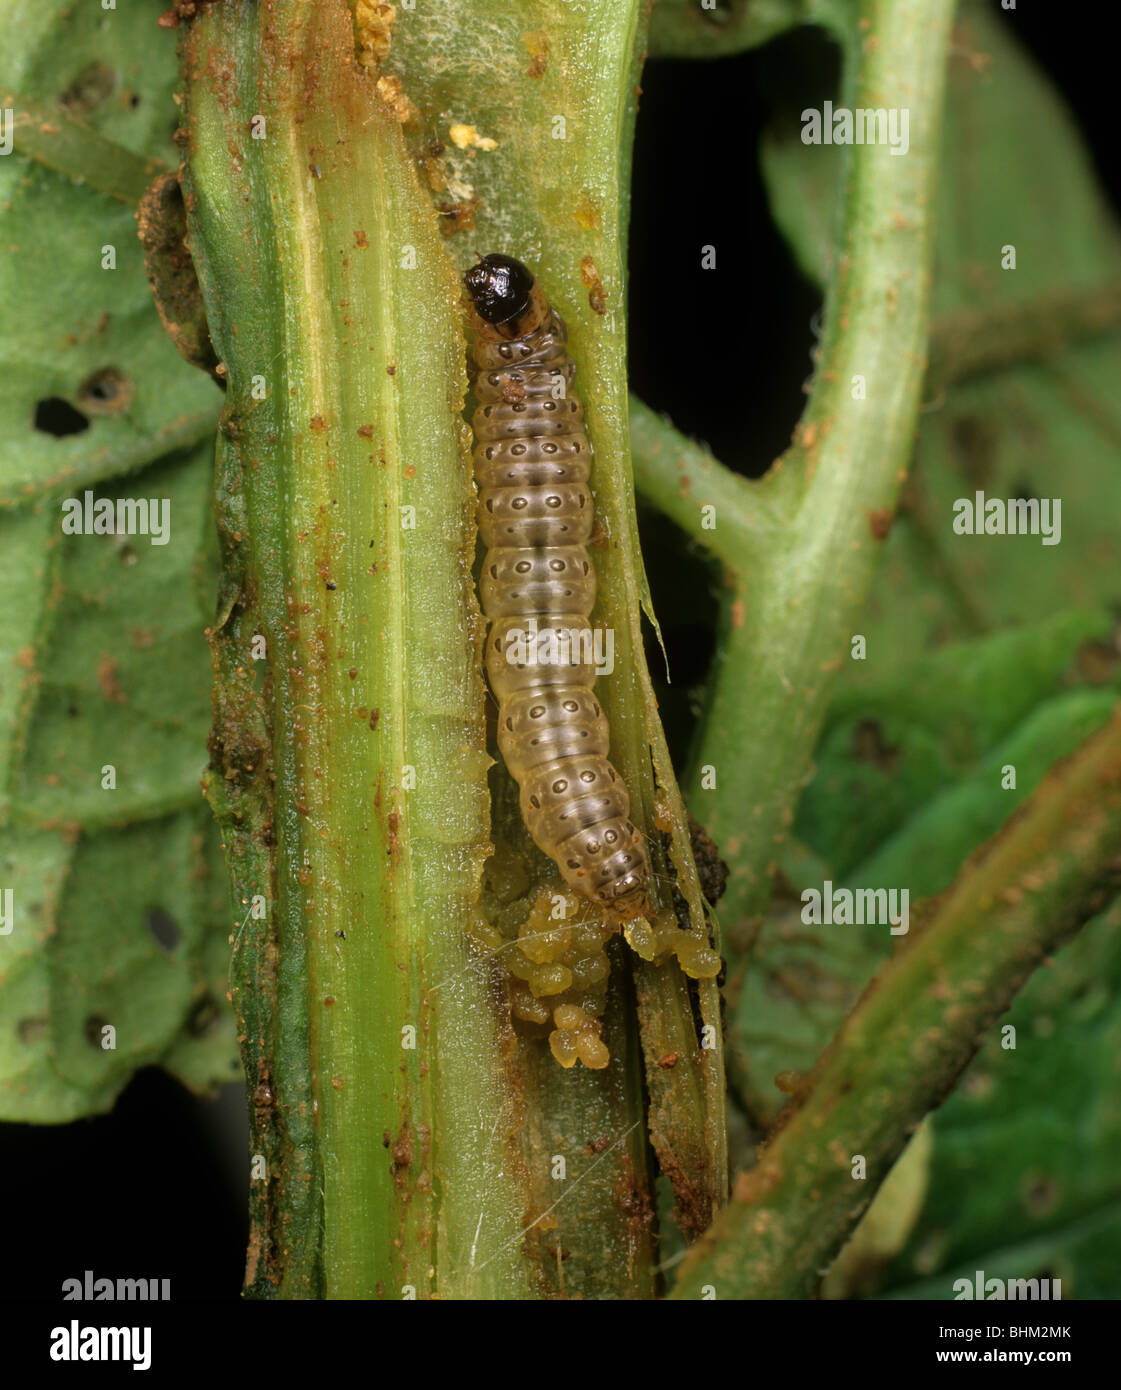 Piralide del mais (Ostrinia nubialis) caterpillar in stelo danneggiato Foto Stock